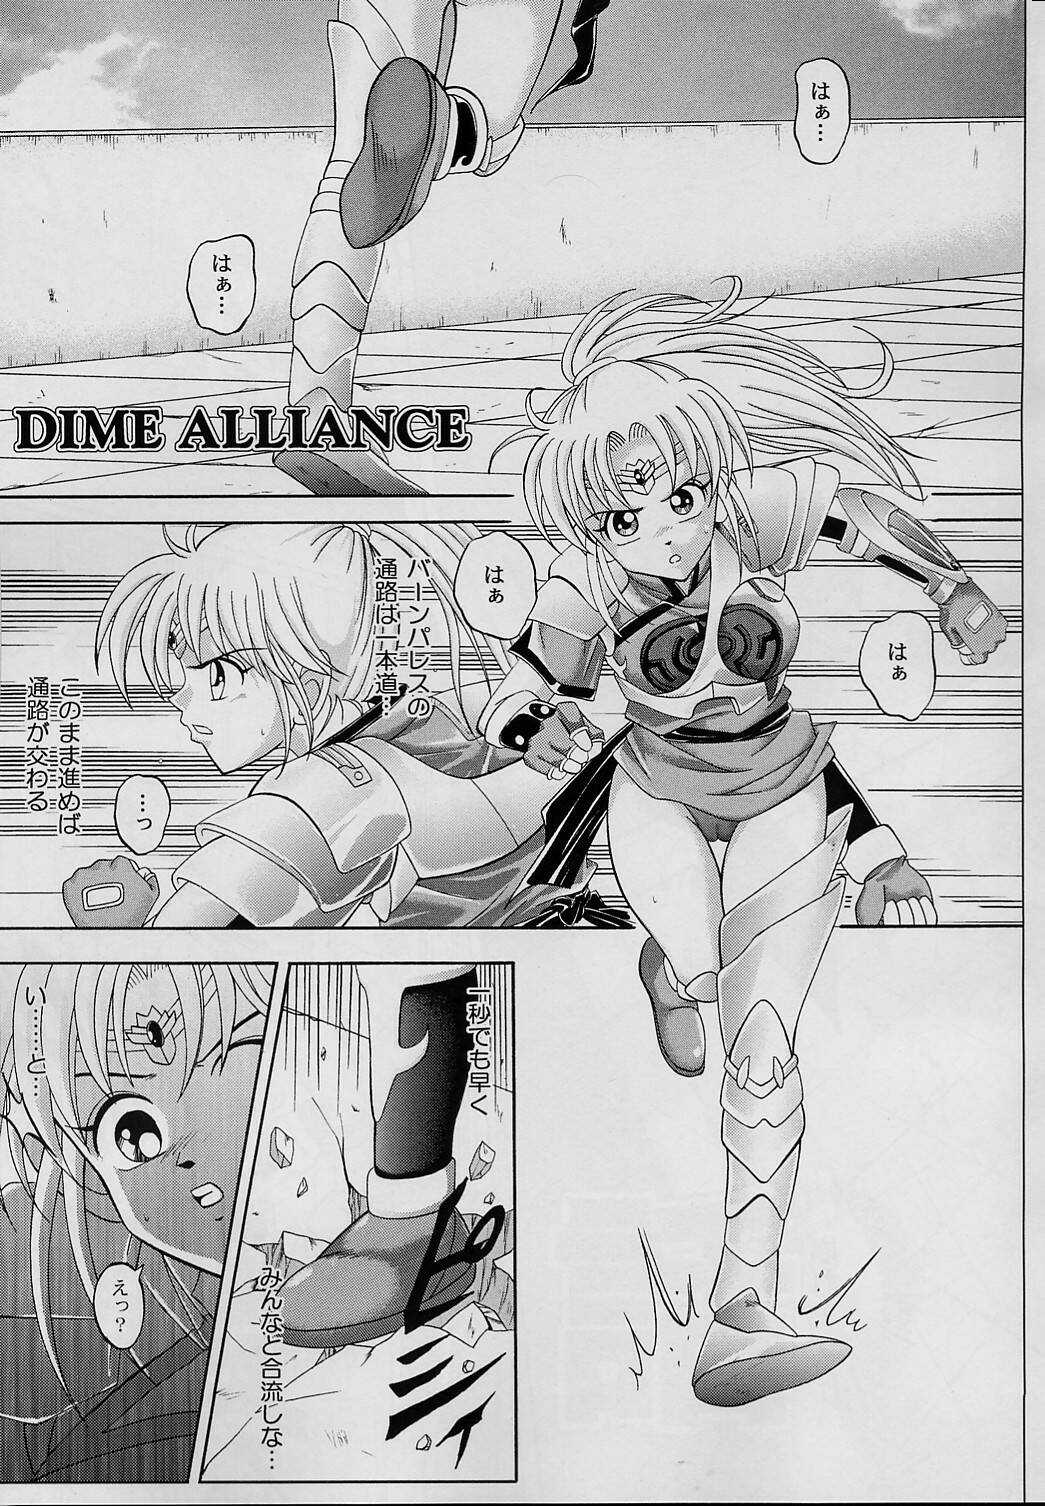 Dime Alliance (ダイム・アライアンス) (J) 